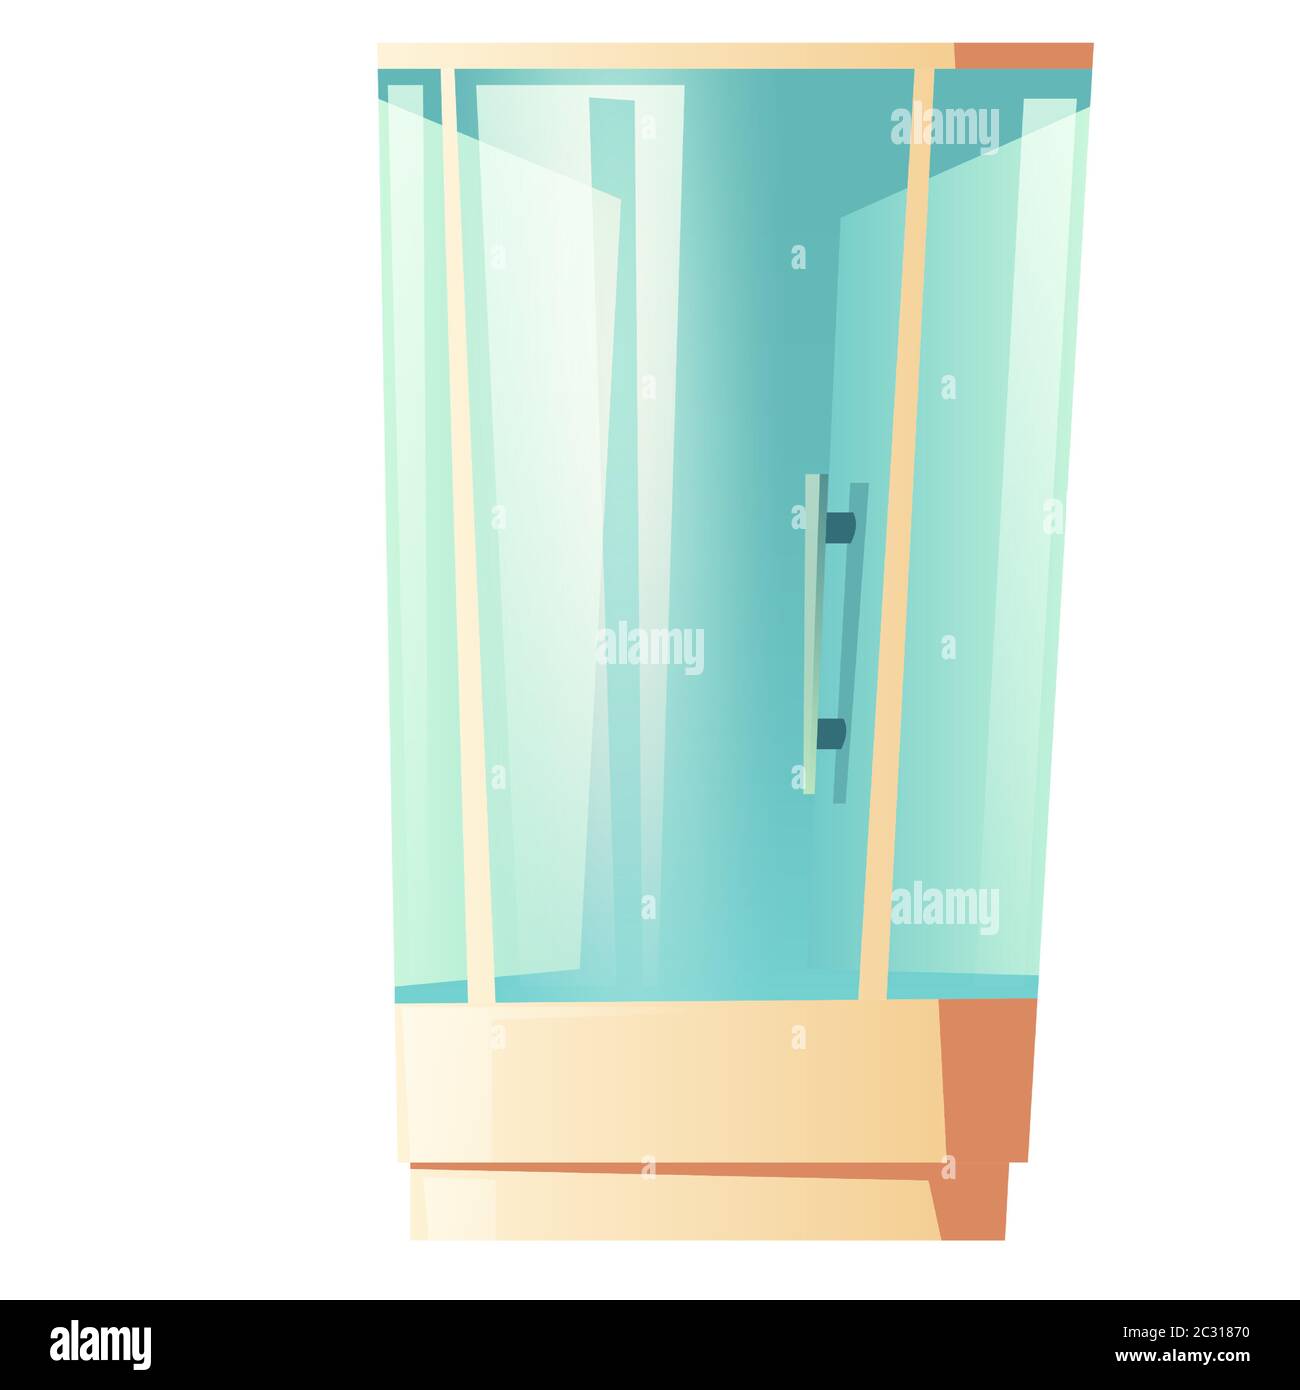 Cabine de douche avec porte en verre isolée sur fond blanc. Illustration vectorielle d'une armoire de bain moderne avec poignée. Équipement de salle de bains inter Illustration de Vecteur